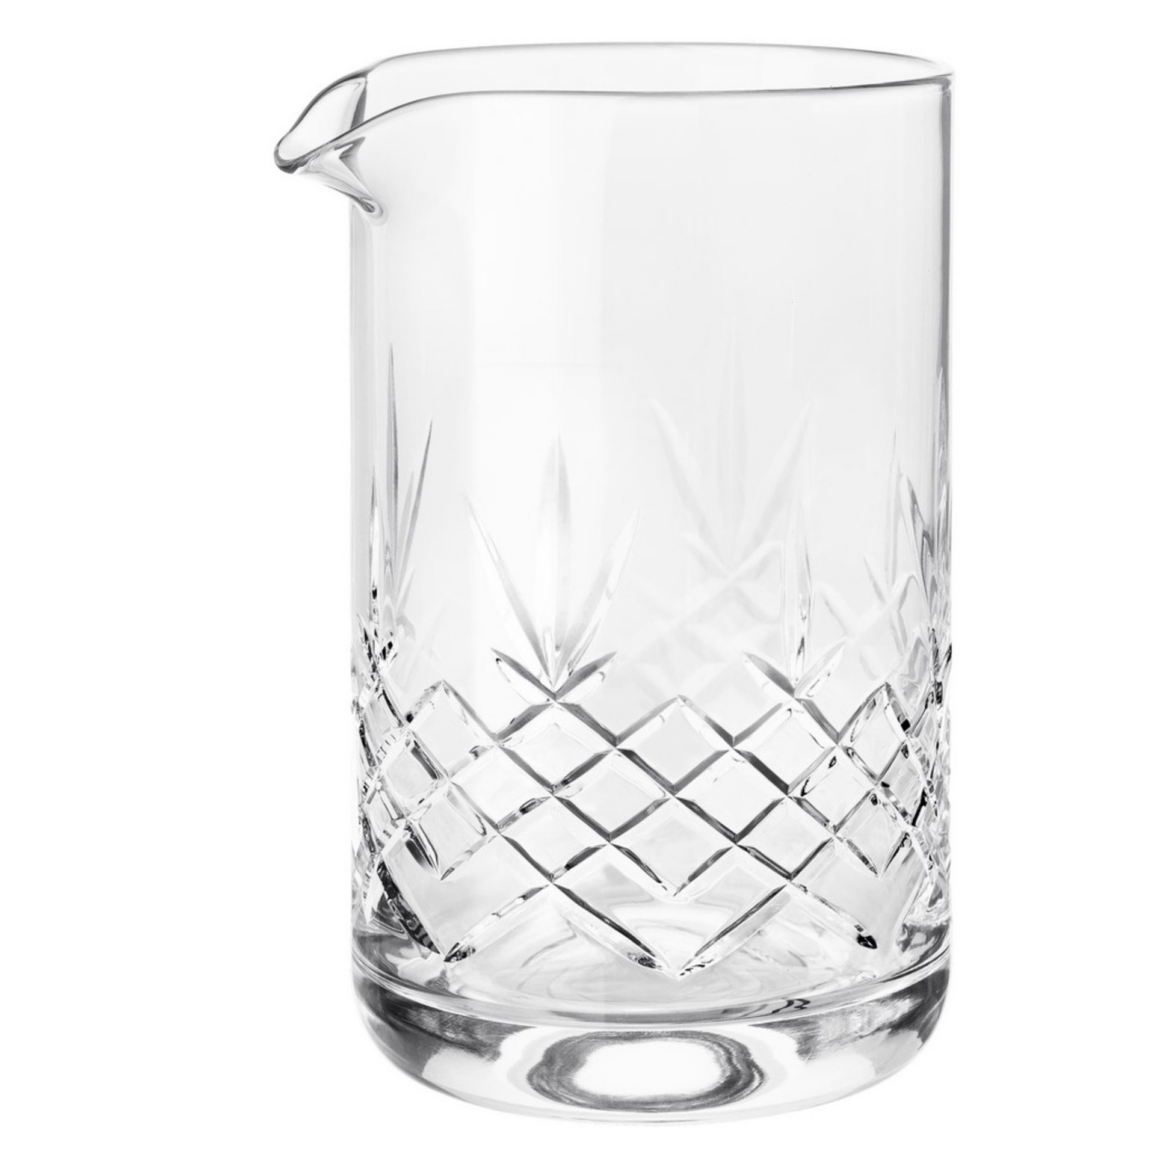 Glaskande til vand fra Frederik Bagger udført i krystalglas af høj kvalitet